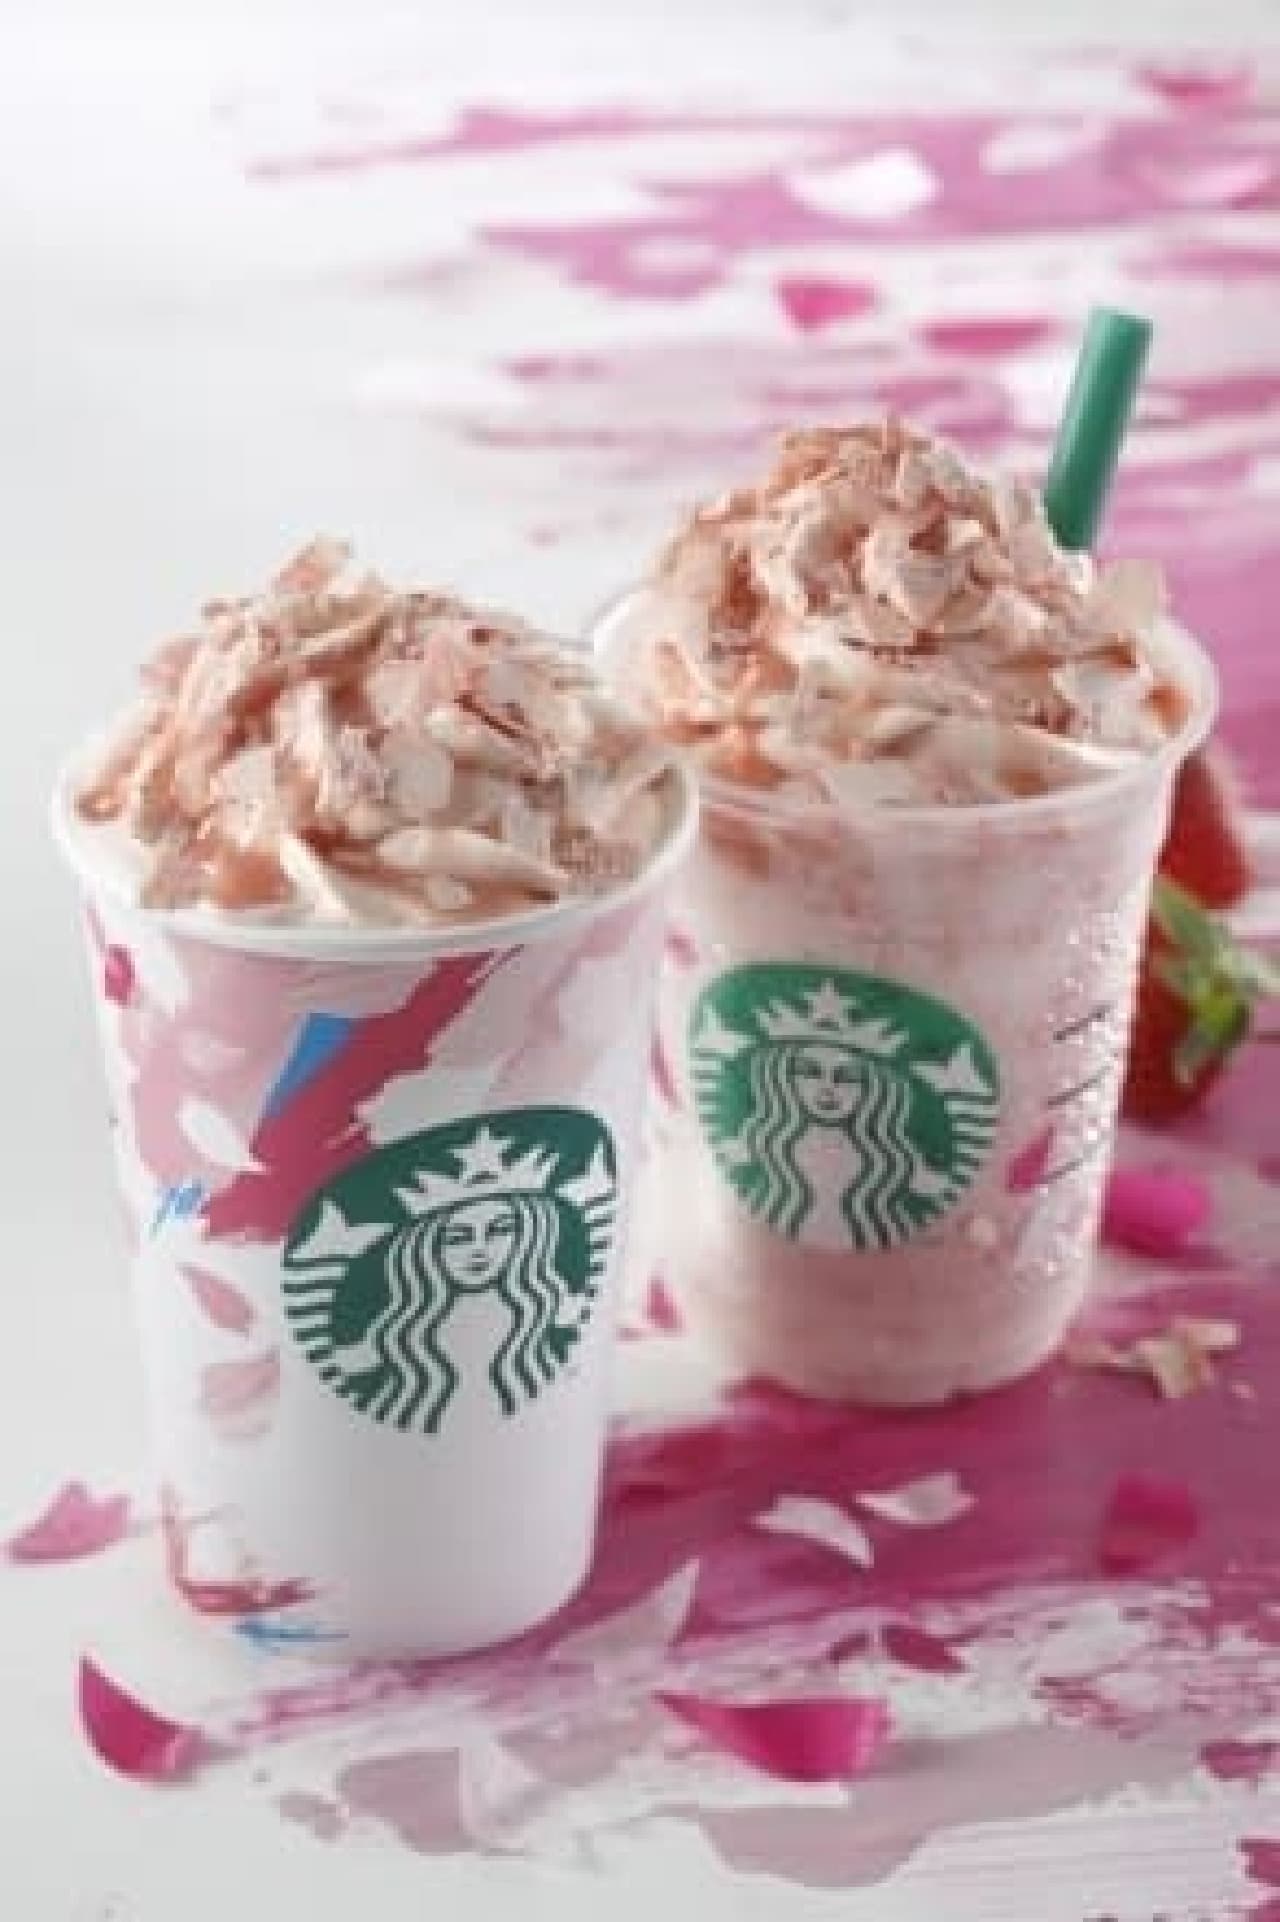 Starbucks new work is cherry blossom frappe & latte